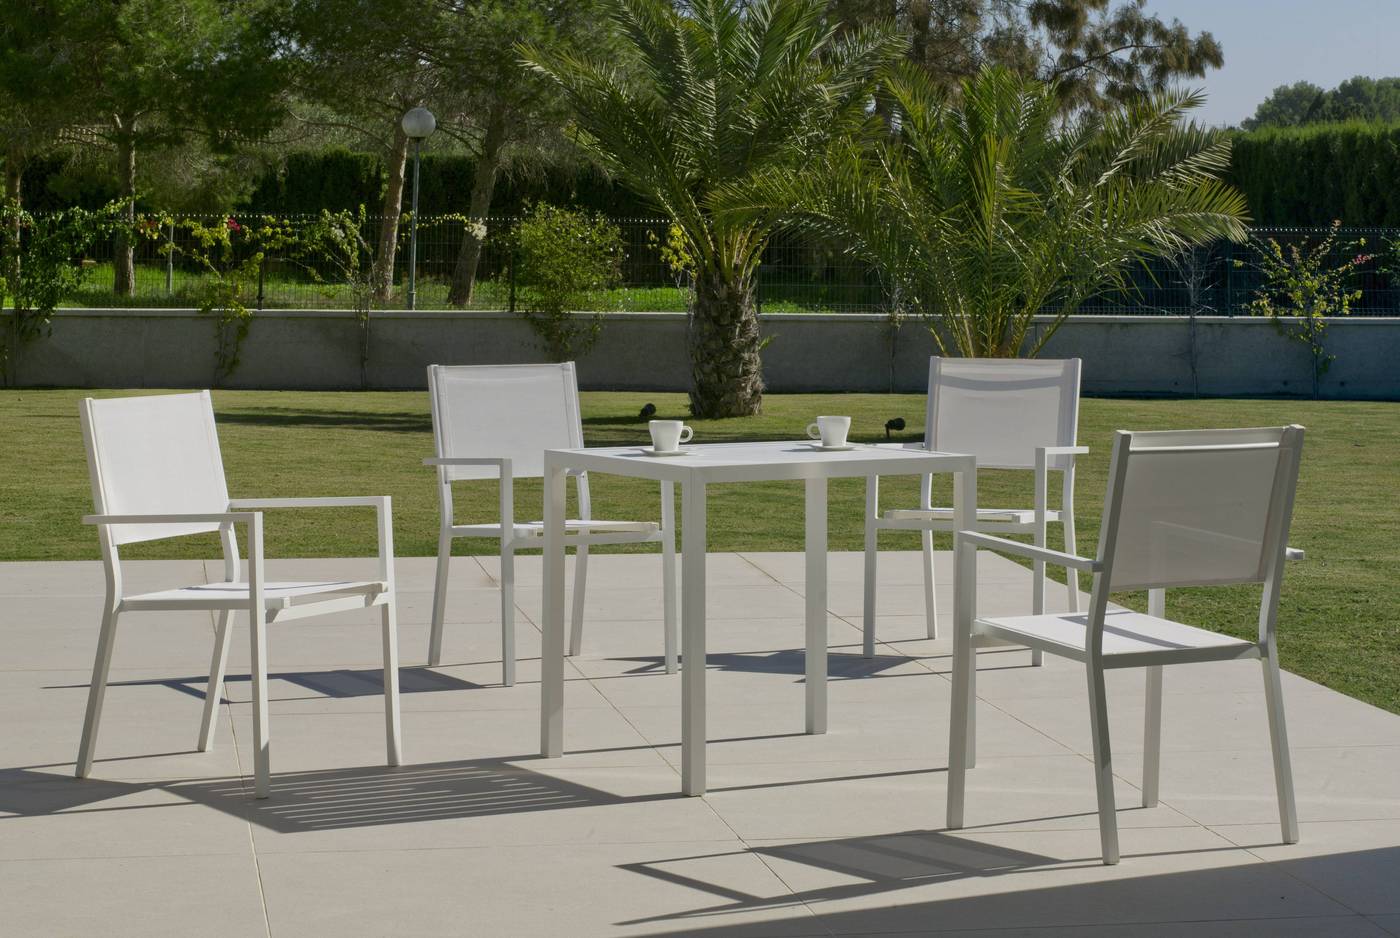 Set Aluminio Melea-Córcega 80-4 - Conjunto aluminio para jardín: Mesa cuadrada de 80 cm. + 4 sillones de aluminio y textilen. Disponible en color blanco, antracita, champagne, plata o marrón.